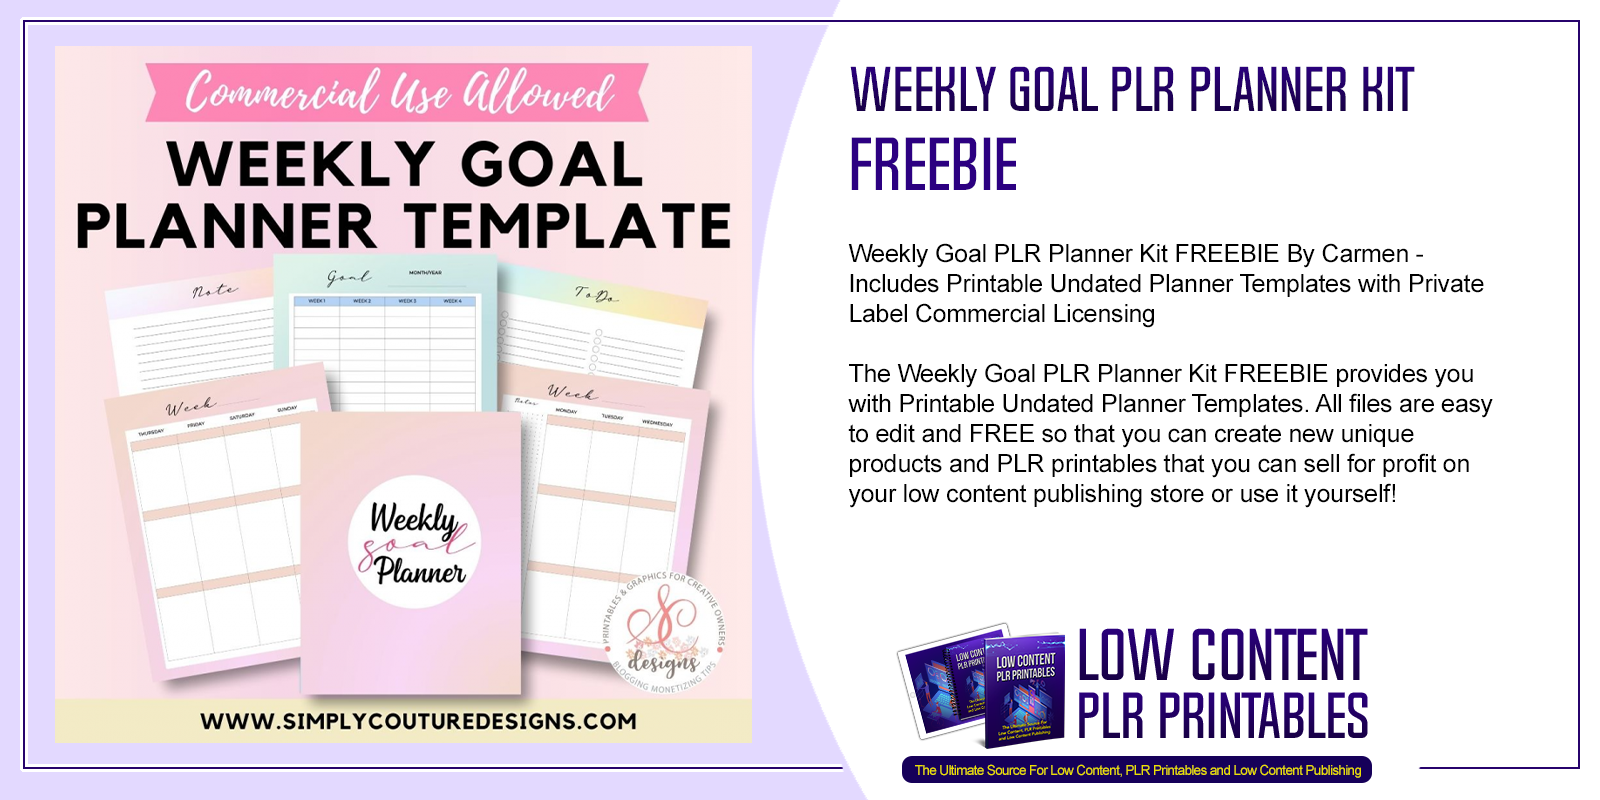 Weekly Goal PLR Planner Kit FREEBIE